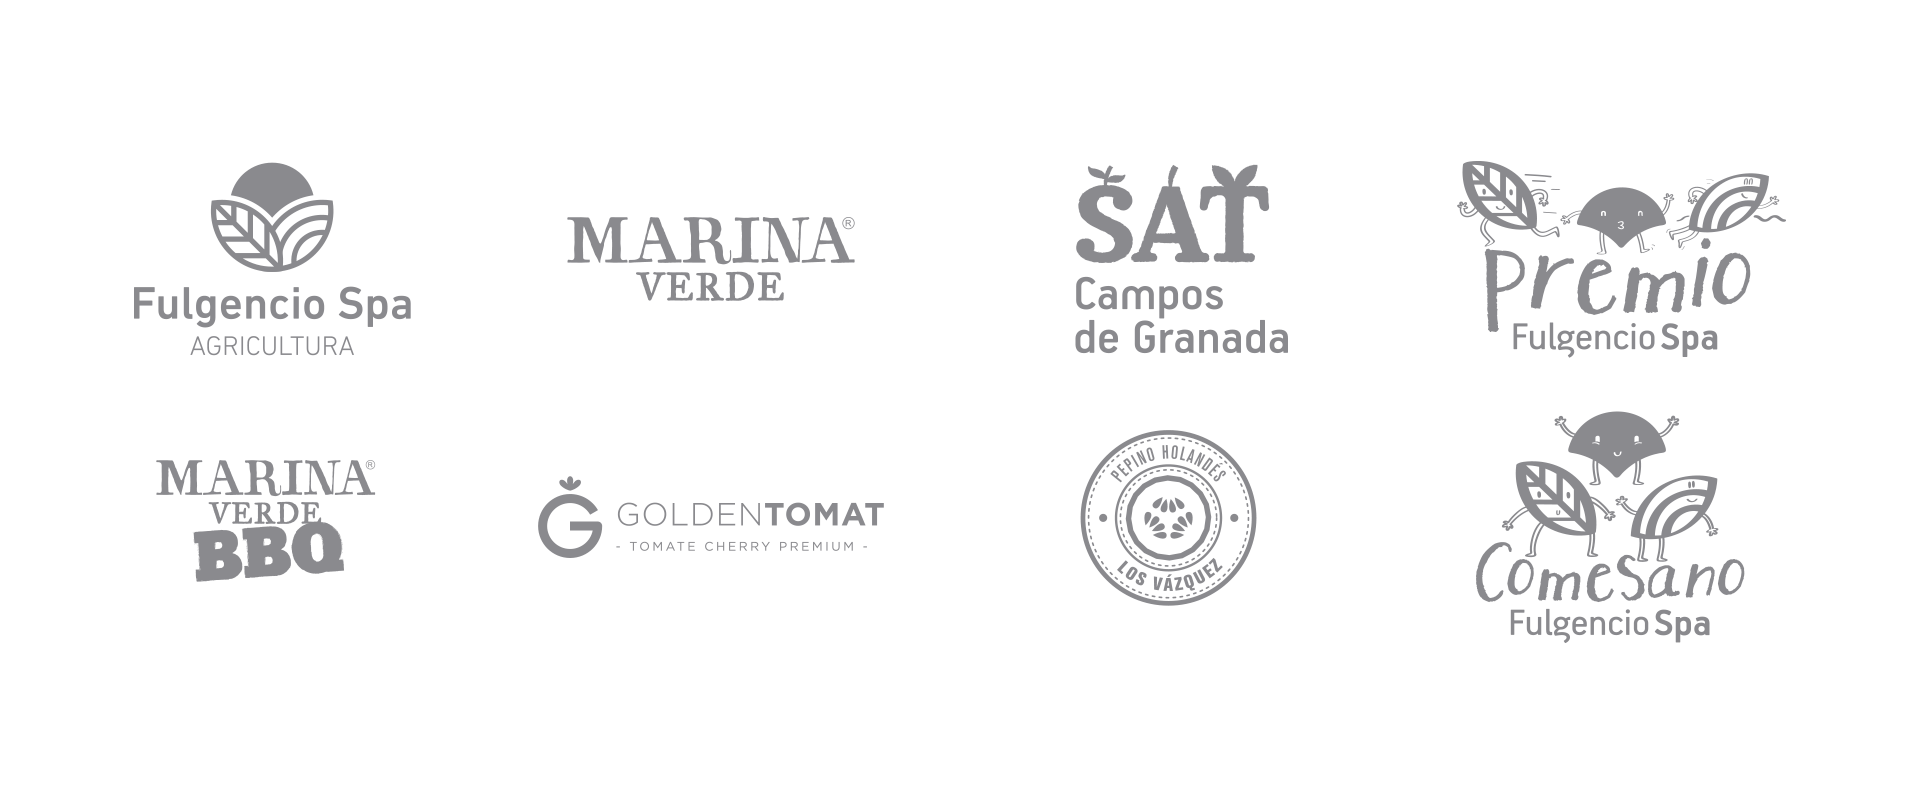 SAT Campos de Granada. Branding, diseño, packaging y diseño web